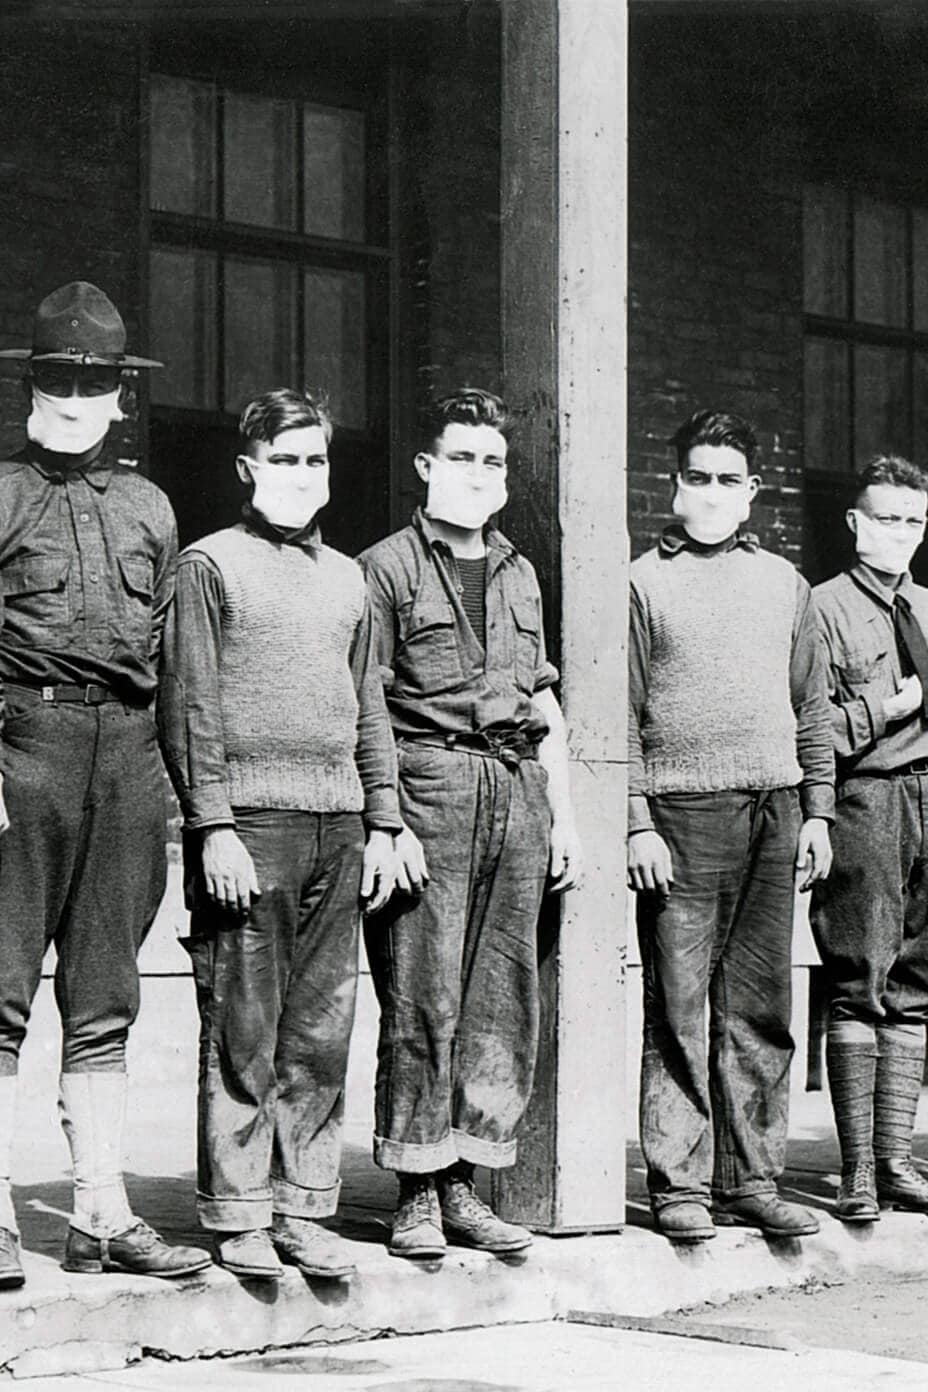 Hombres del ejército de pie con mascarillas durante la pandemia de gripe entre 1918 y 1919